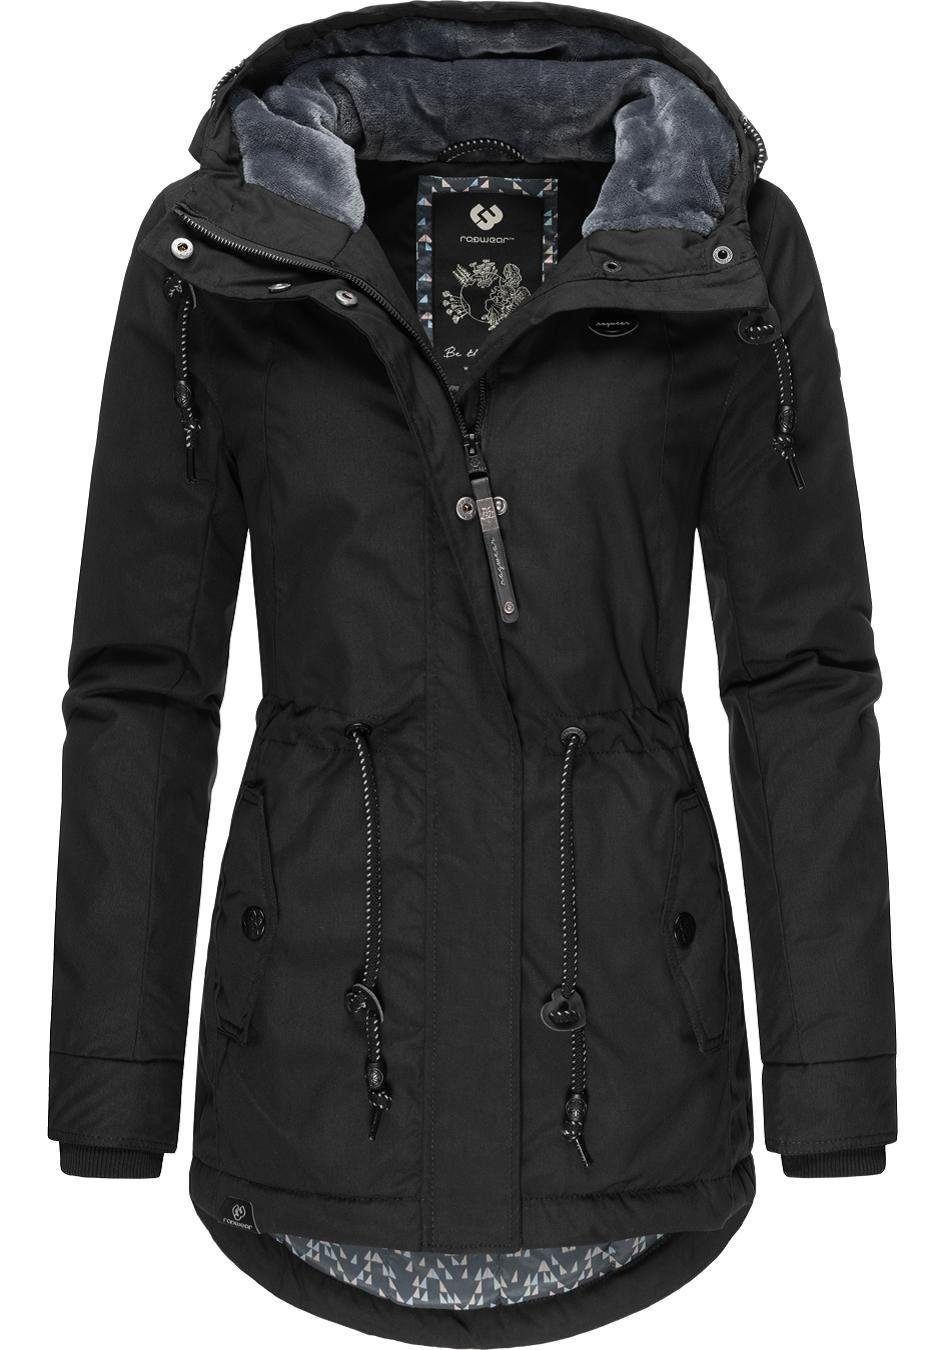 anthra Winterparka die Label Ragwear kalte Jahreszeit für Black Winterjacke Monadis stylischer